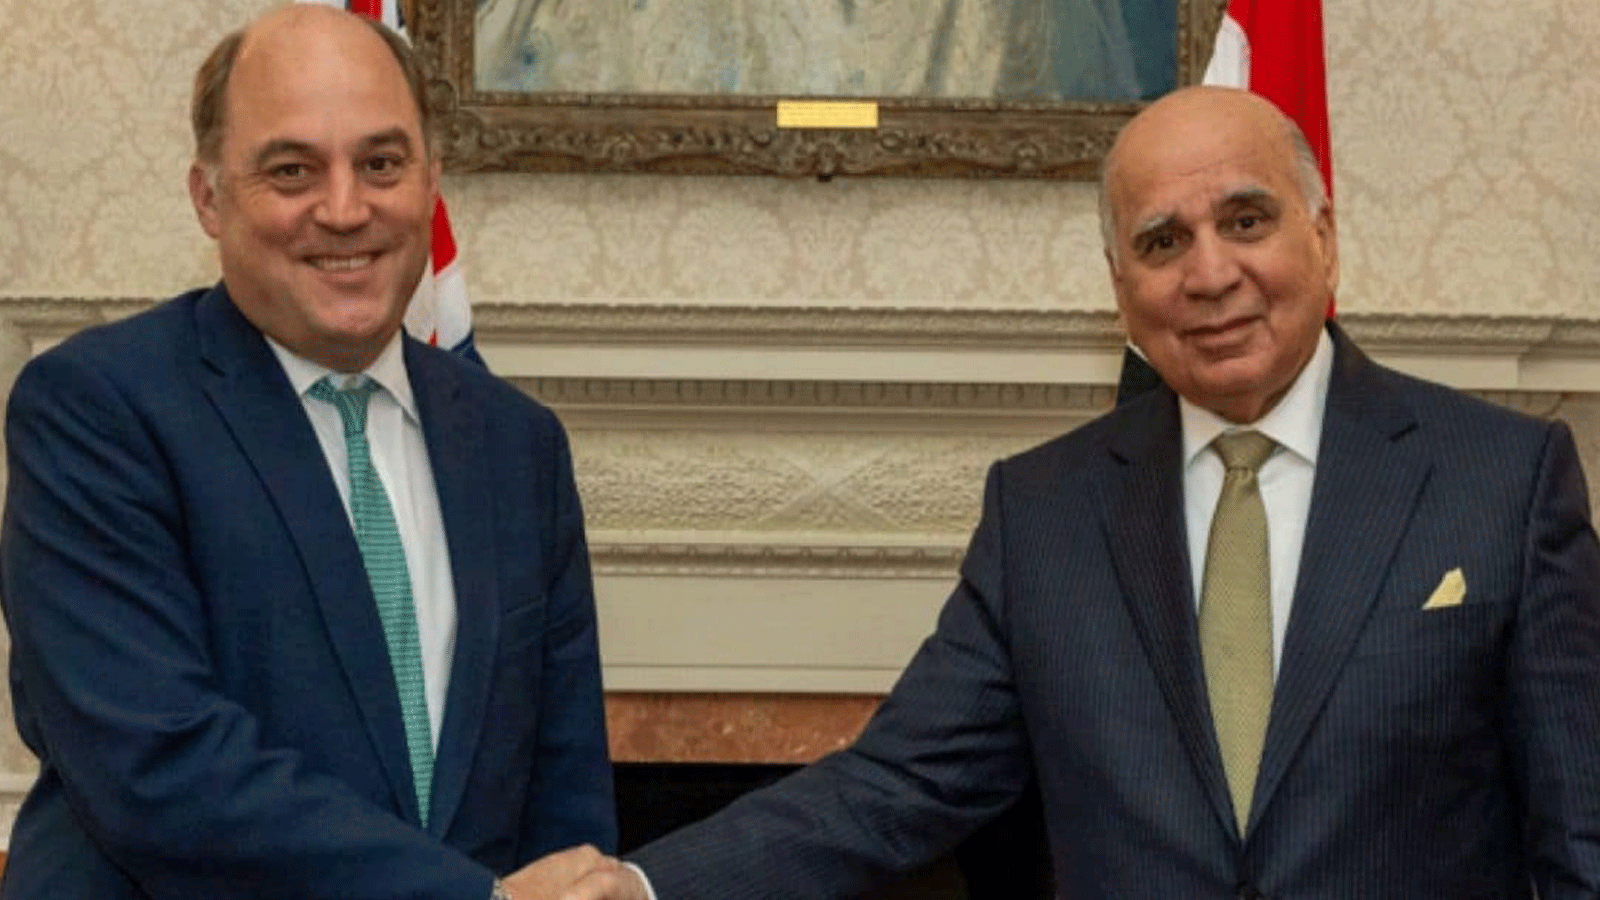 وزير الخارجية العراقي فؤاد حسين ملتقيًا في لندن مساء الثلاثاء 4 يوليو\تموز مع وزير الدفاع البريطاني بن والس (مكتبه)